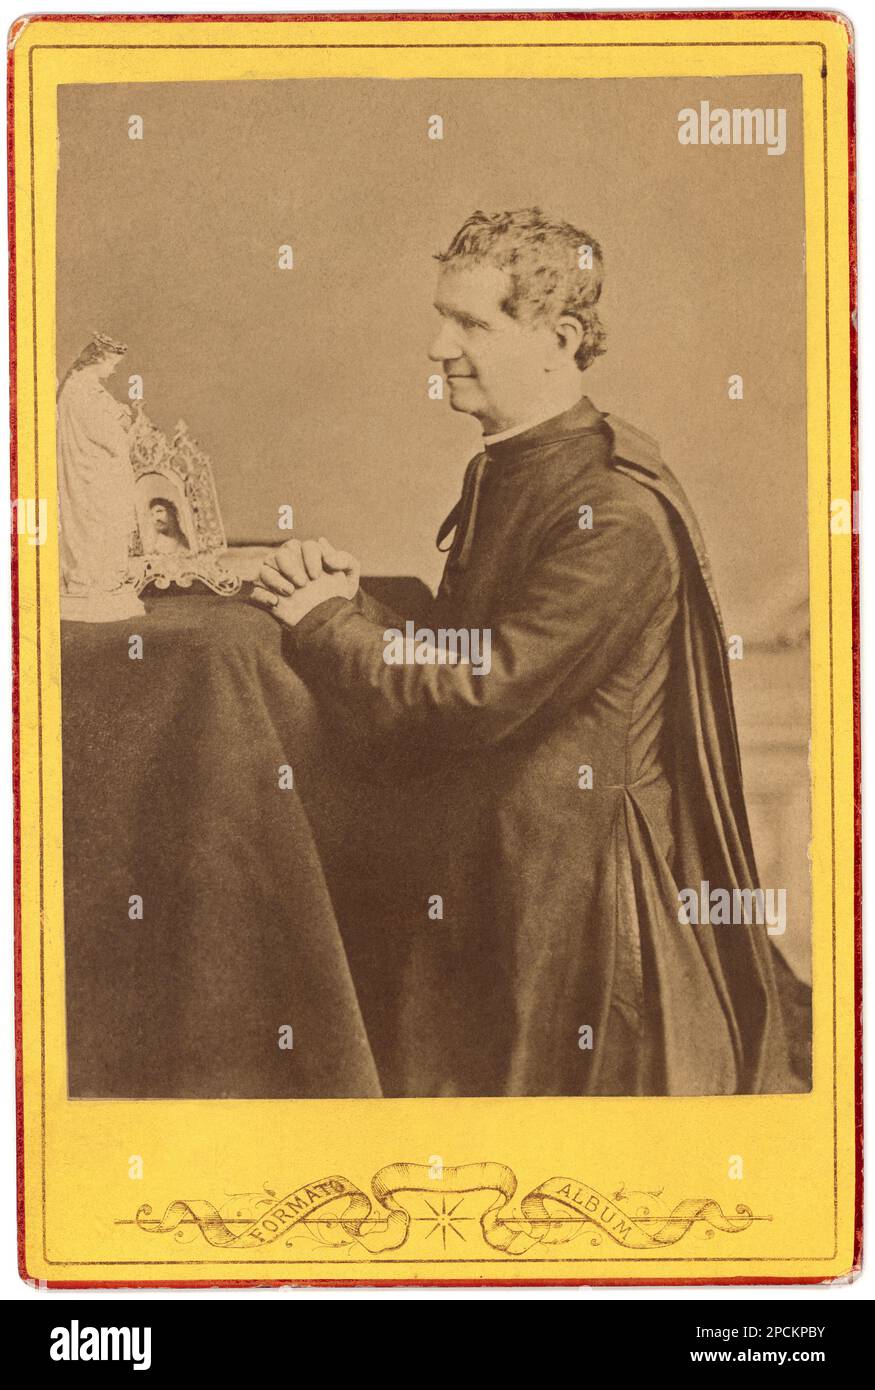 Il San Don GIOVANNI BOSCO italiano ( 1815 - 1888 )- SANTO - san - Sant - RELIGIONE CATTOLICA - RELIGIONE CATTOLICA - beata - colletto - prelato - prete - prete - ritratto - ritratto - Chiesa Cattolica Romana - preghiera - pregia - mani giunte - profilo -- -- Archivio GBB Foto Stock